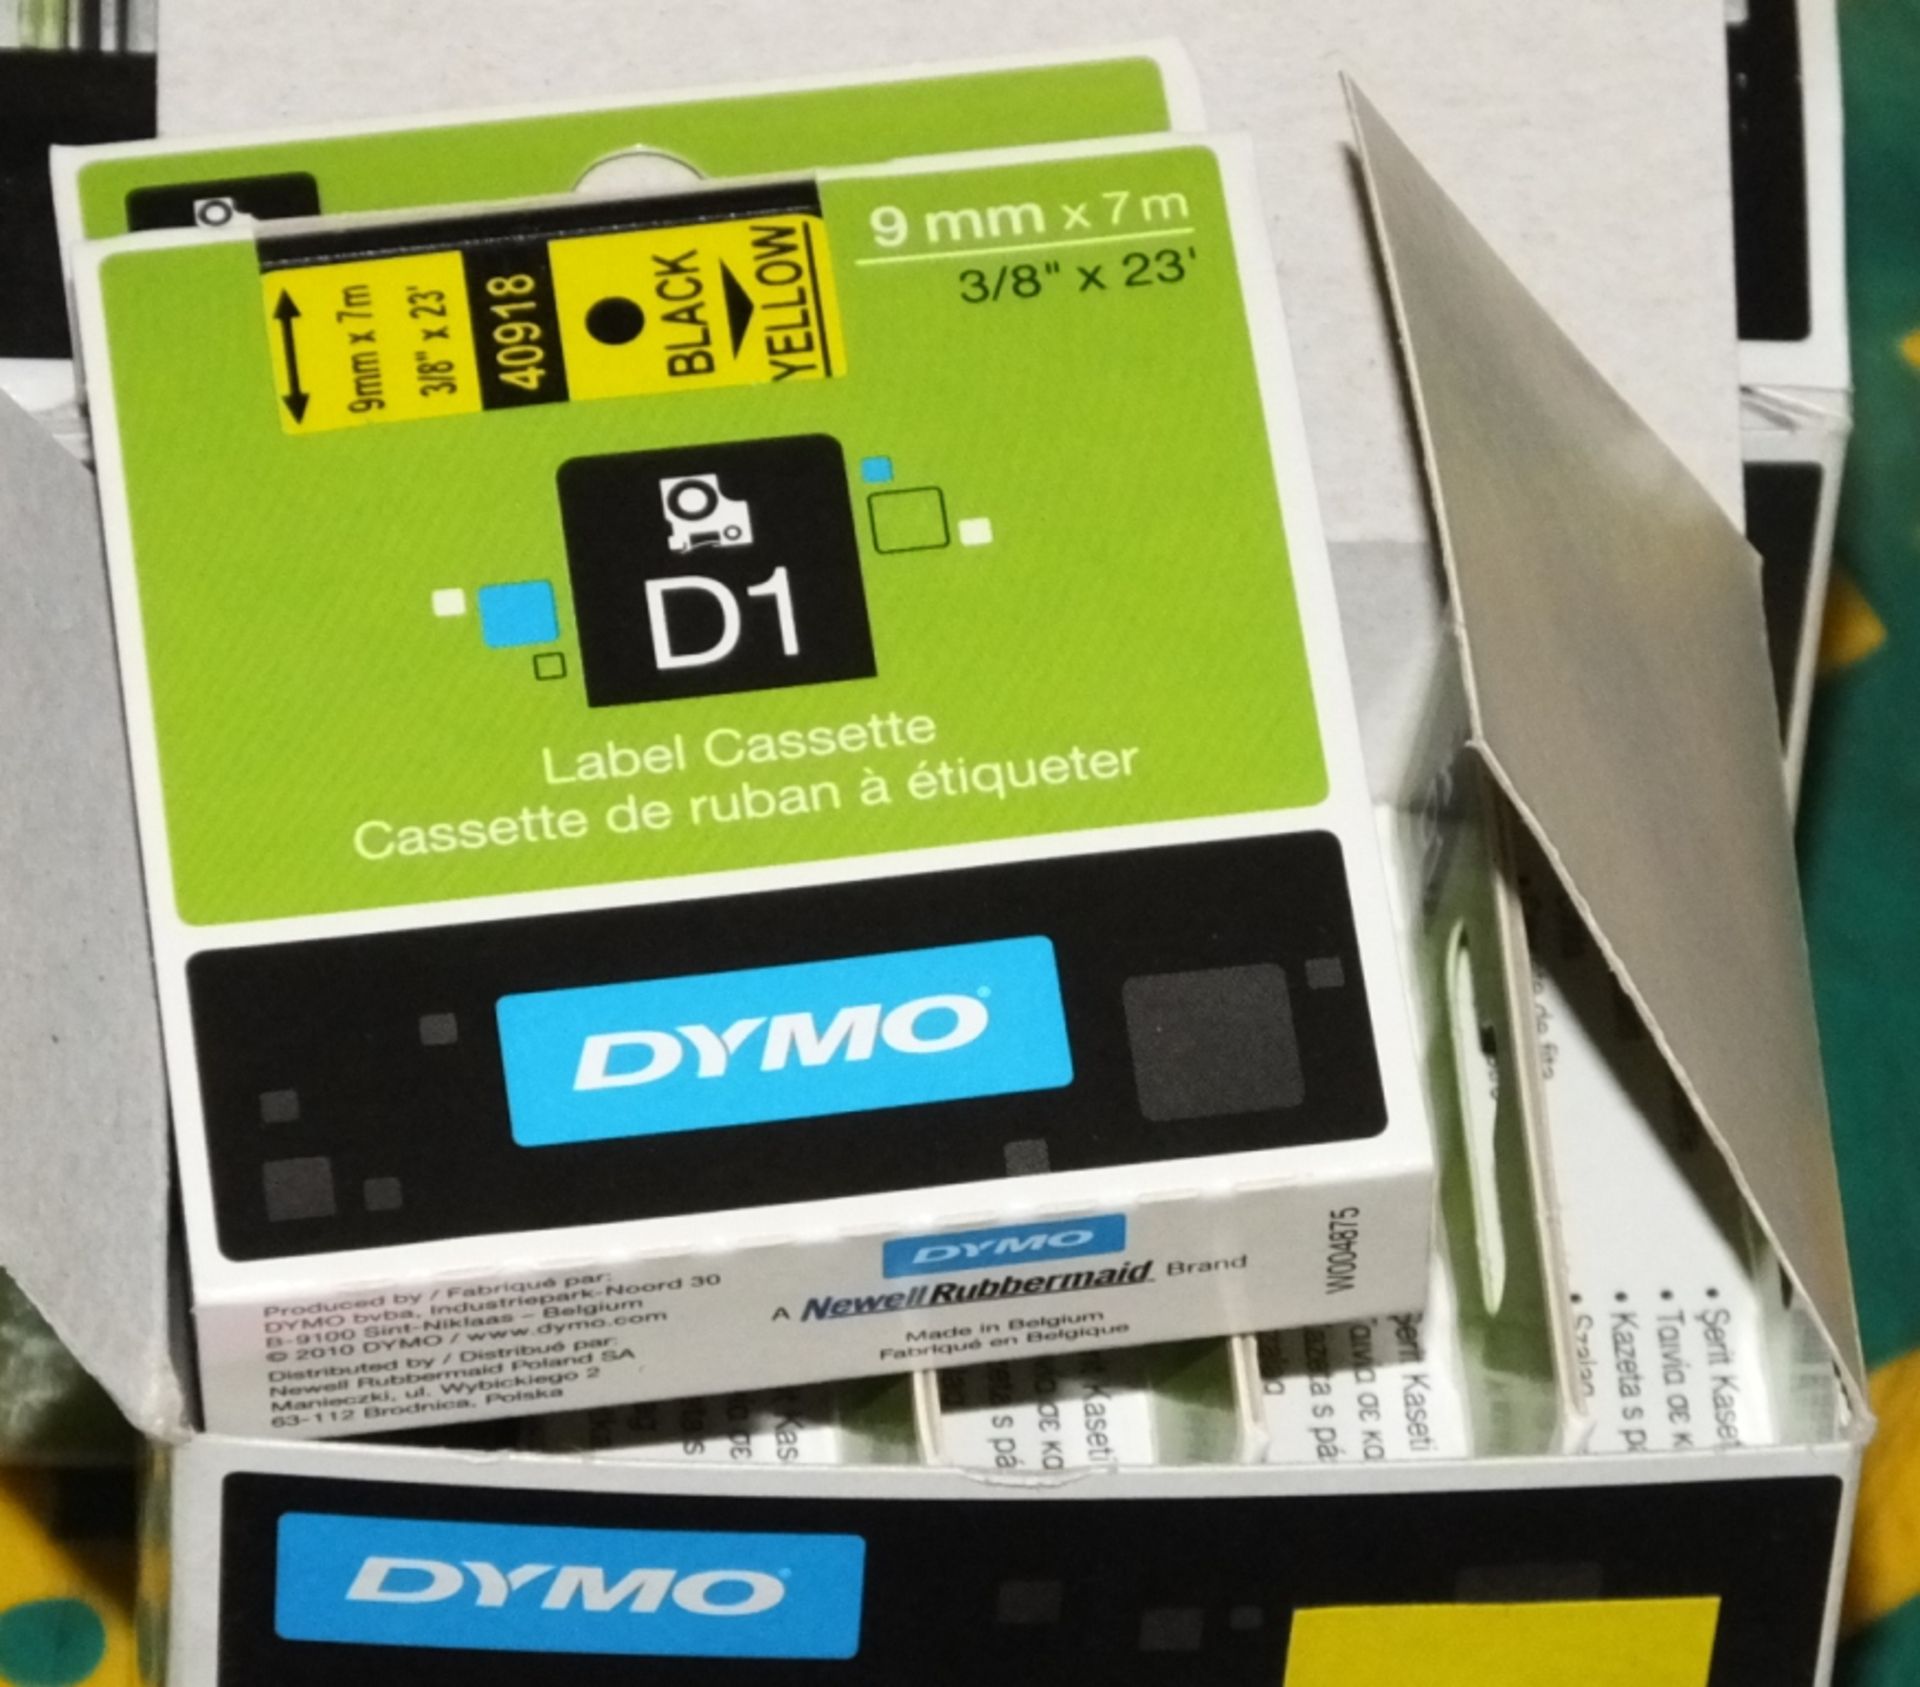 Dymo D1 label cassettes - 5 per box - 5 boxes - Image 2 of 2